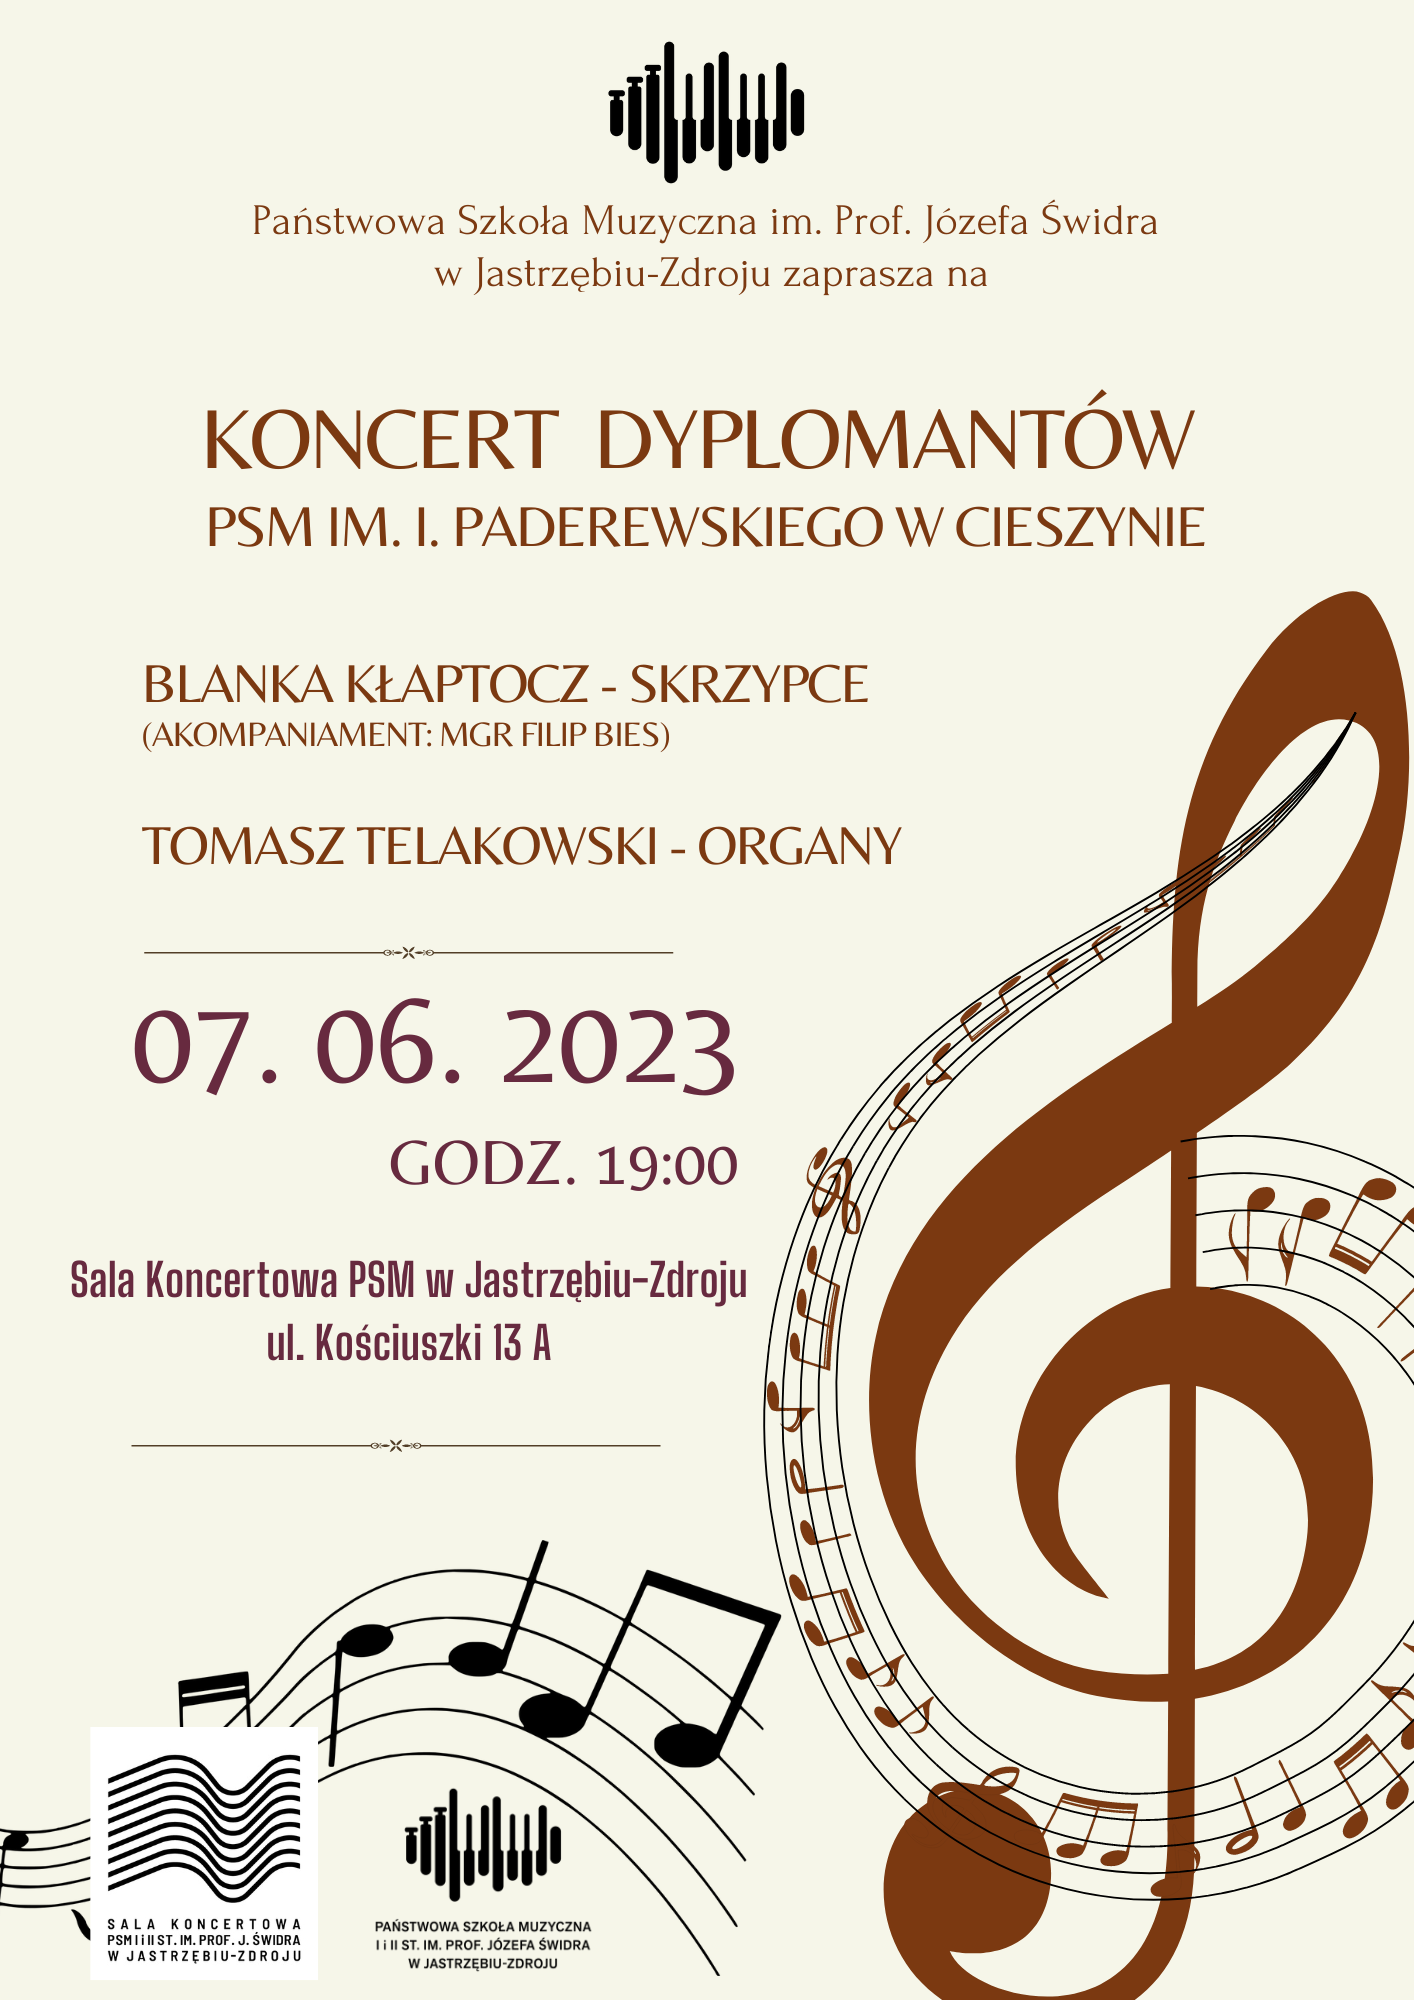 Koncert Dyplomantów PSM im. I.Paderewskiego w Cieszynie.